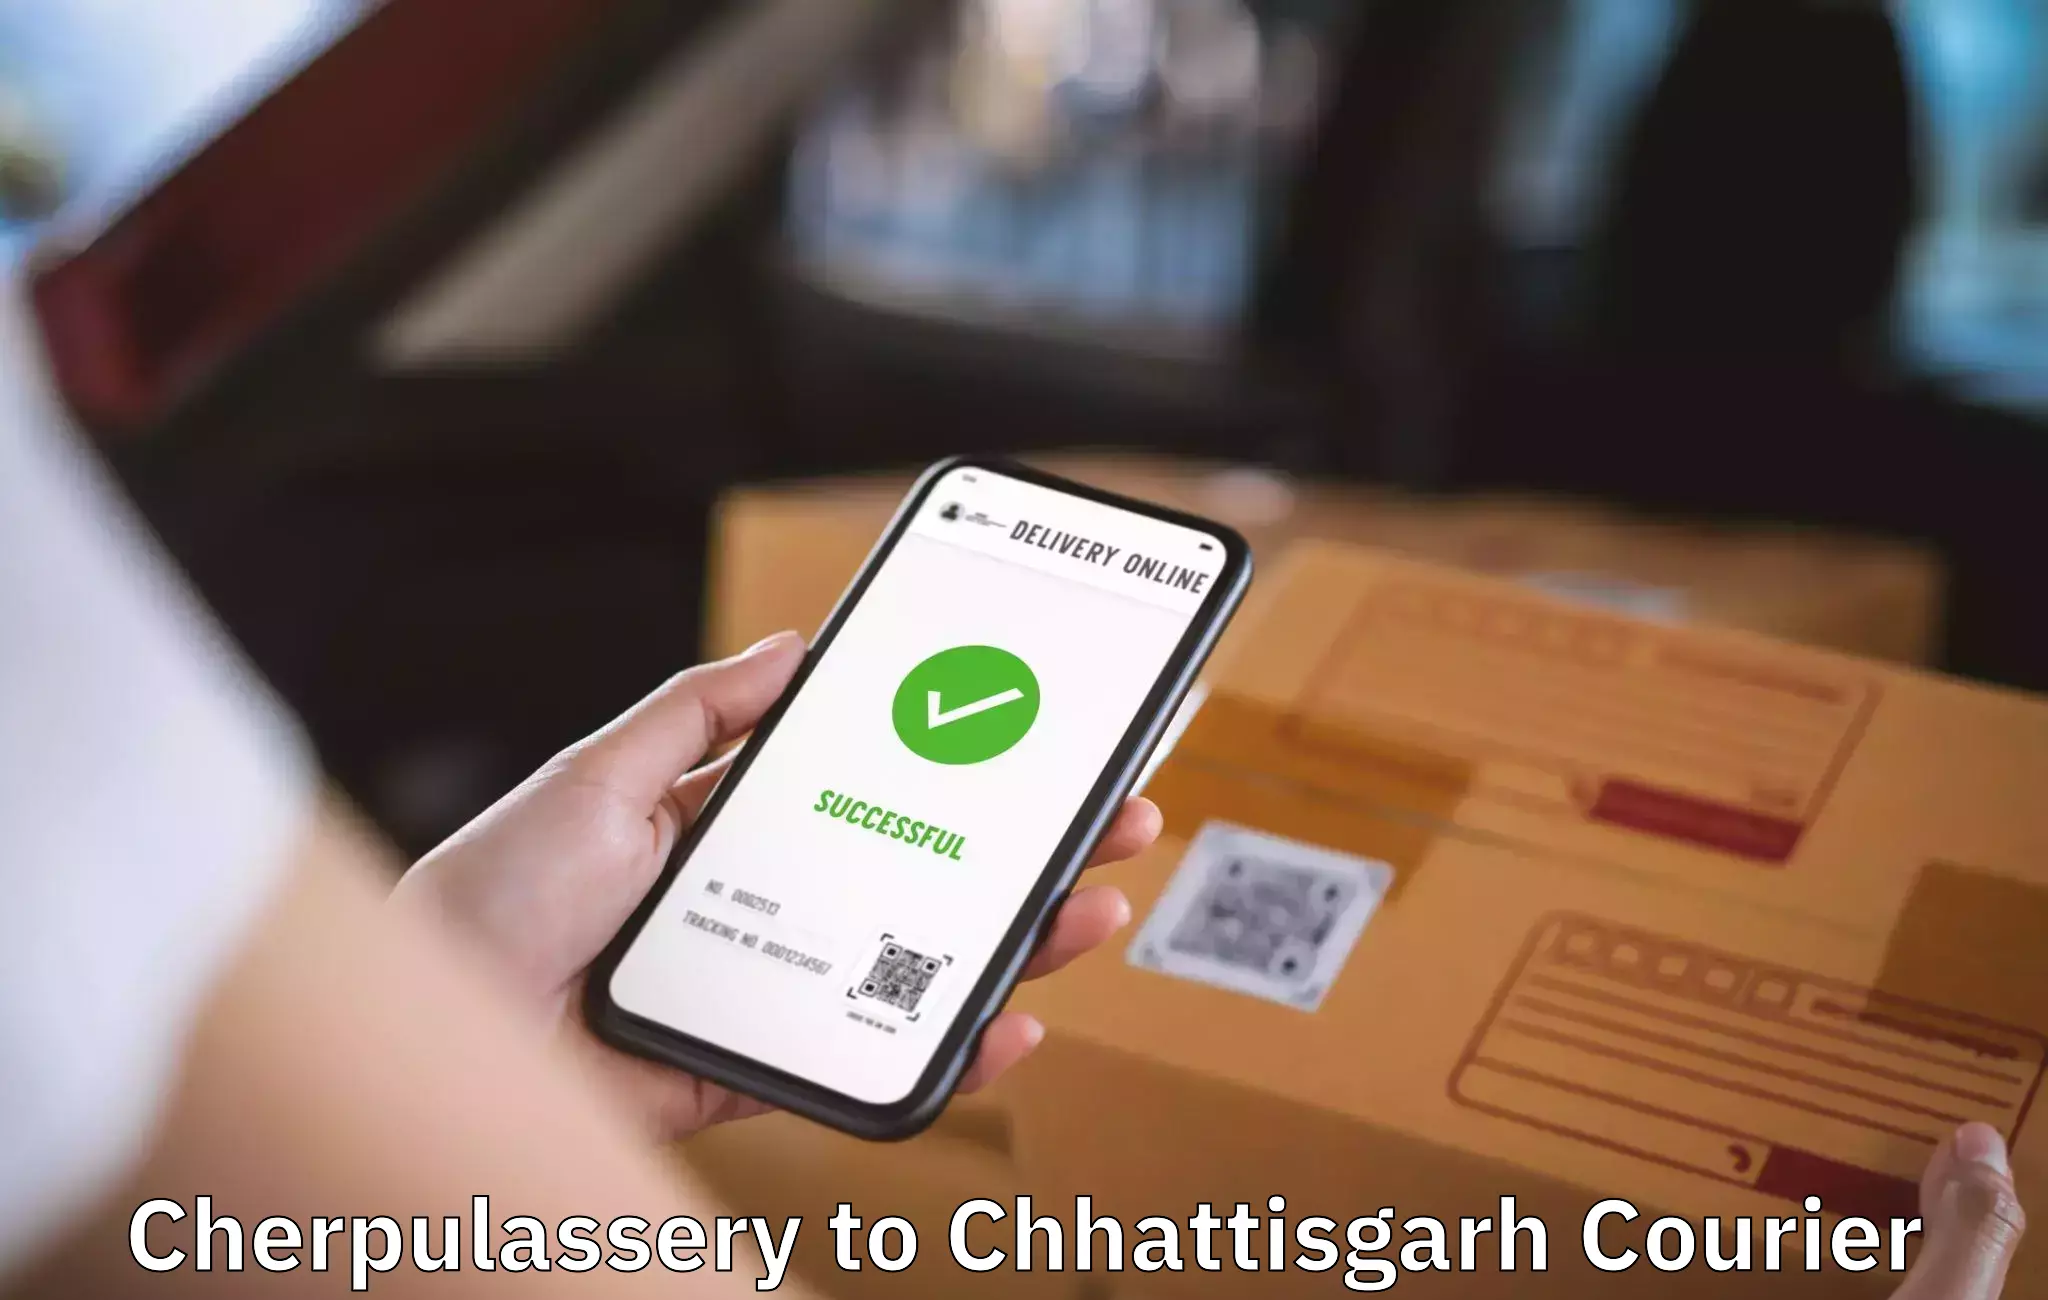 Furniture delivery service Cherpulassery to Korea Chhattisgarh